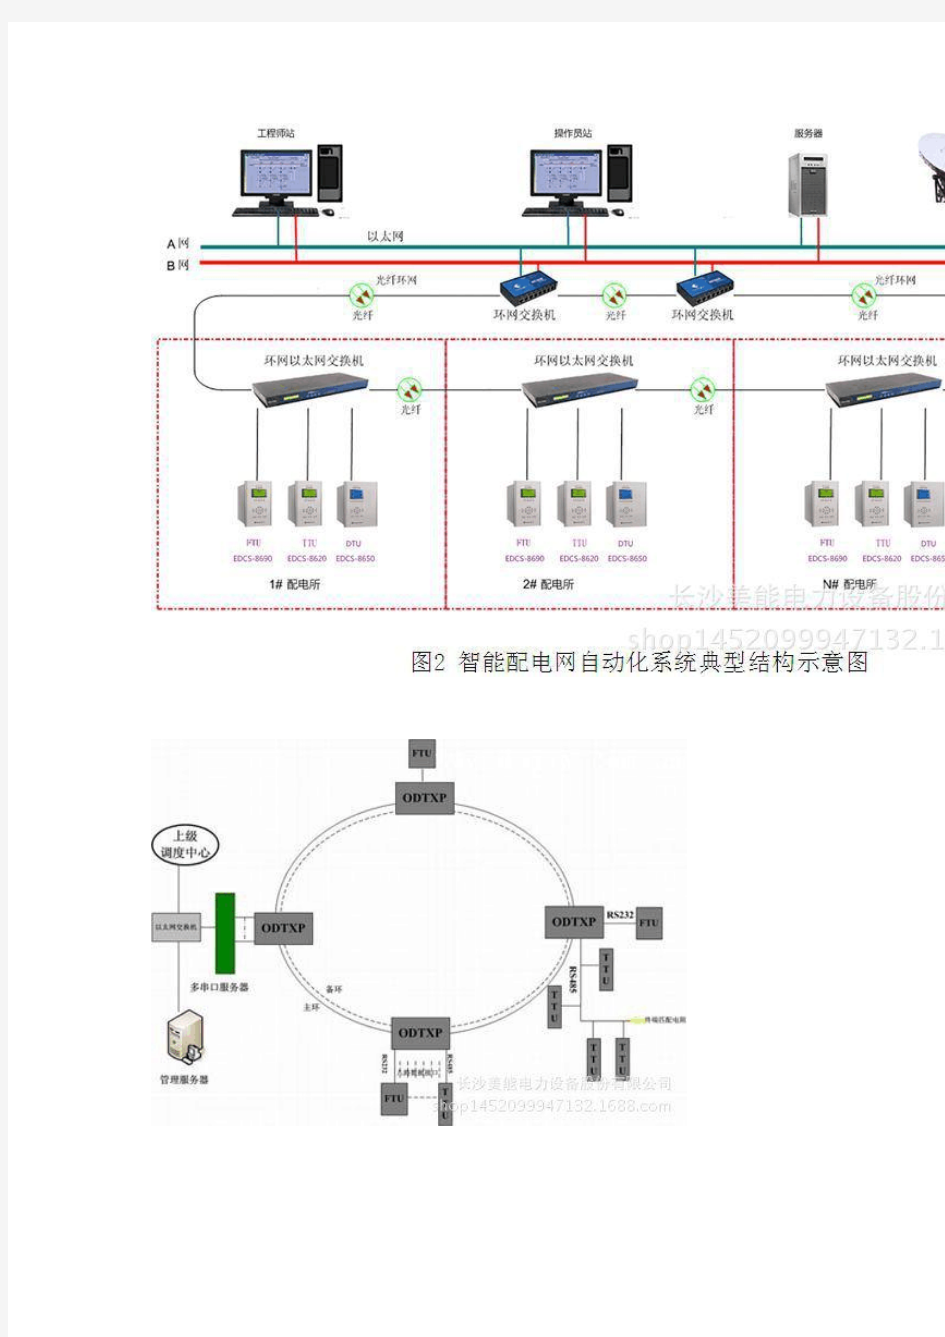 长沙美能电力设备股份有限公司配网自动化控制系统